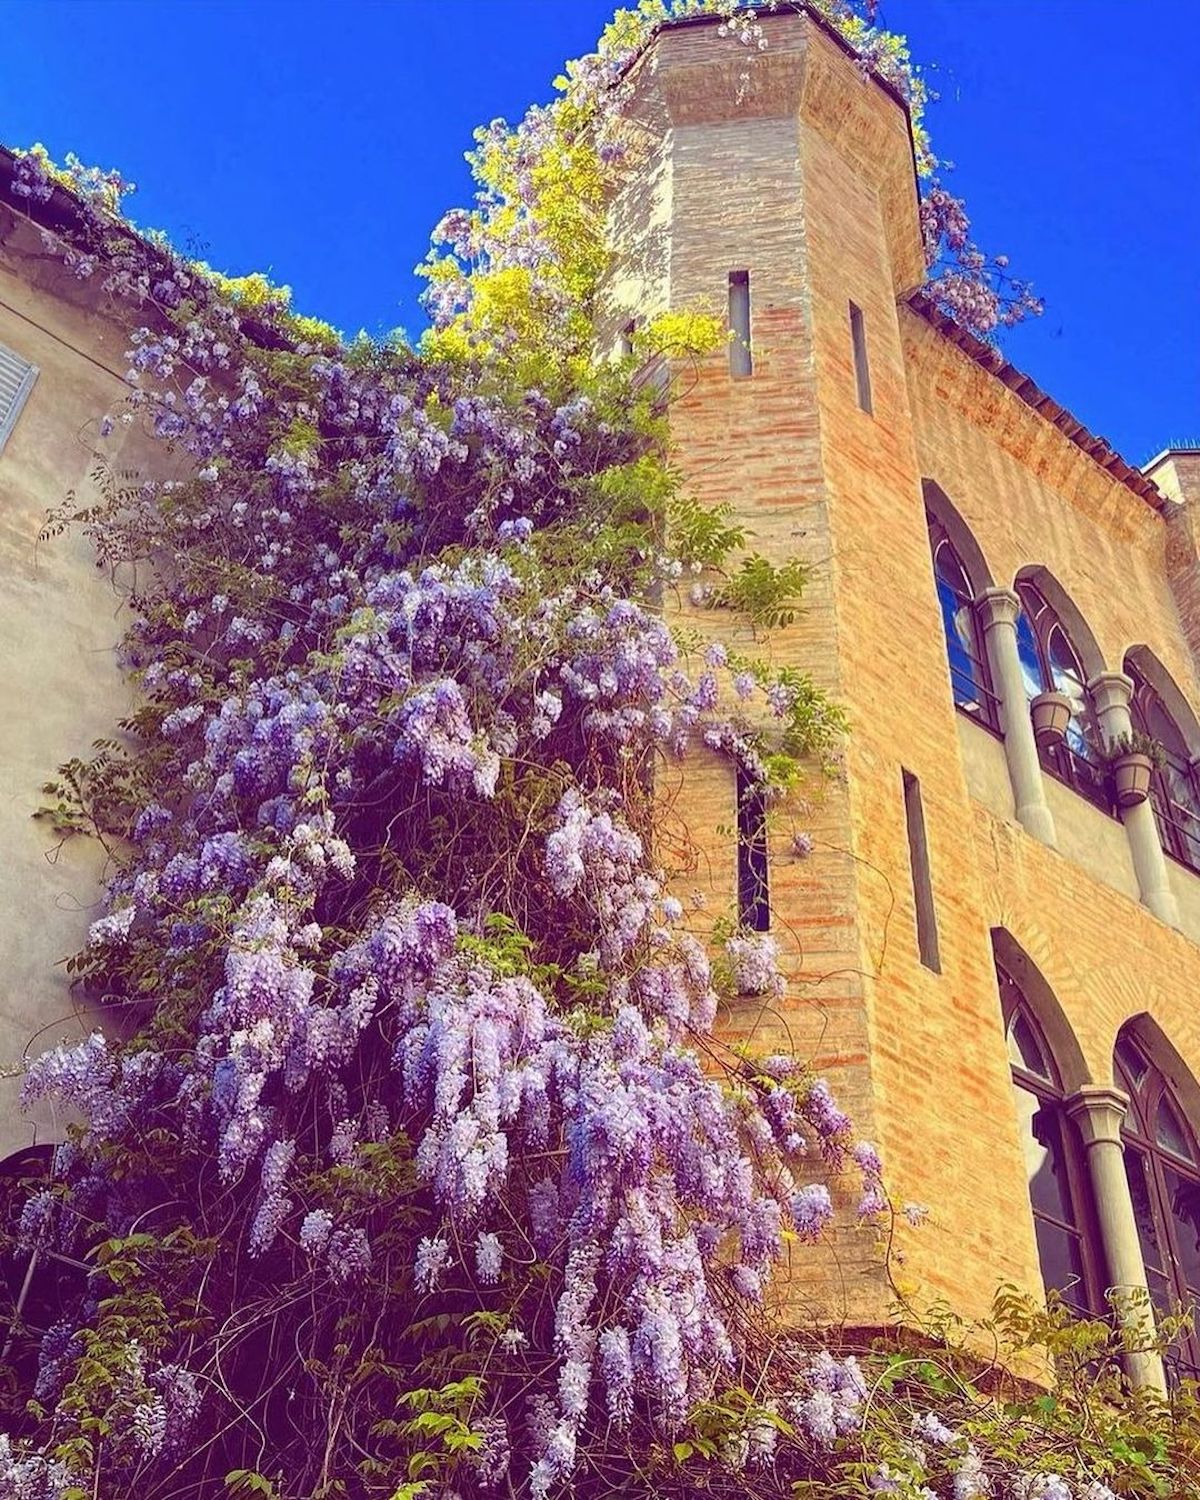 Reggio Emilia, Il glicine la torretta ottagonale di Palazzo Brami-Gorini, ph. erboristeria_monilistore, CC-BY-NC-SA 3.0